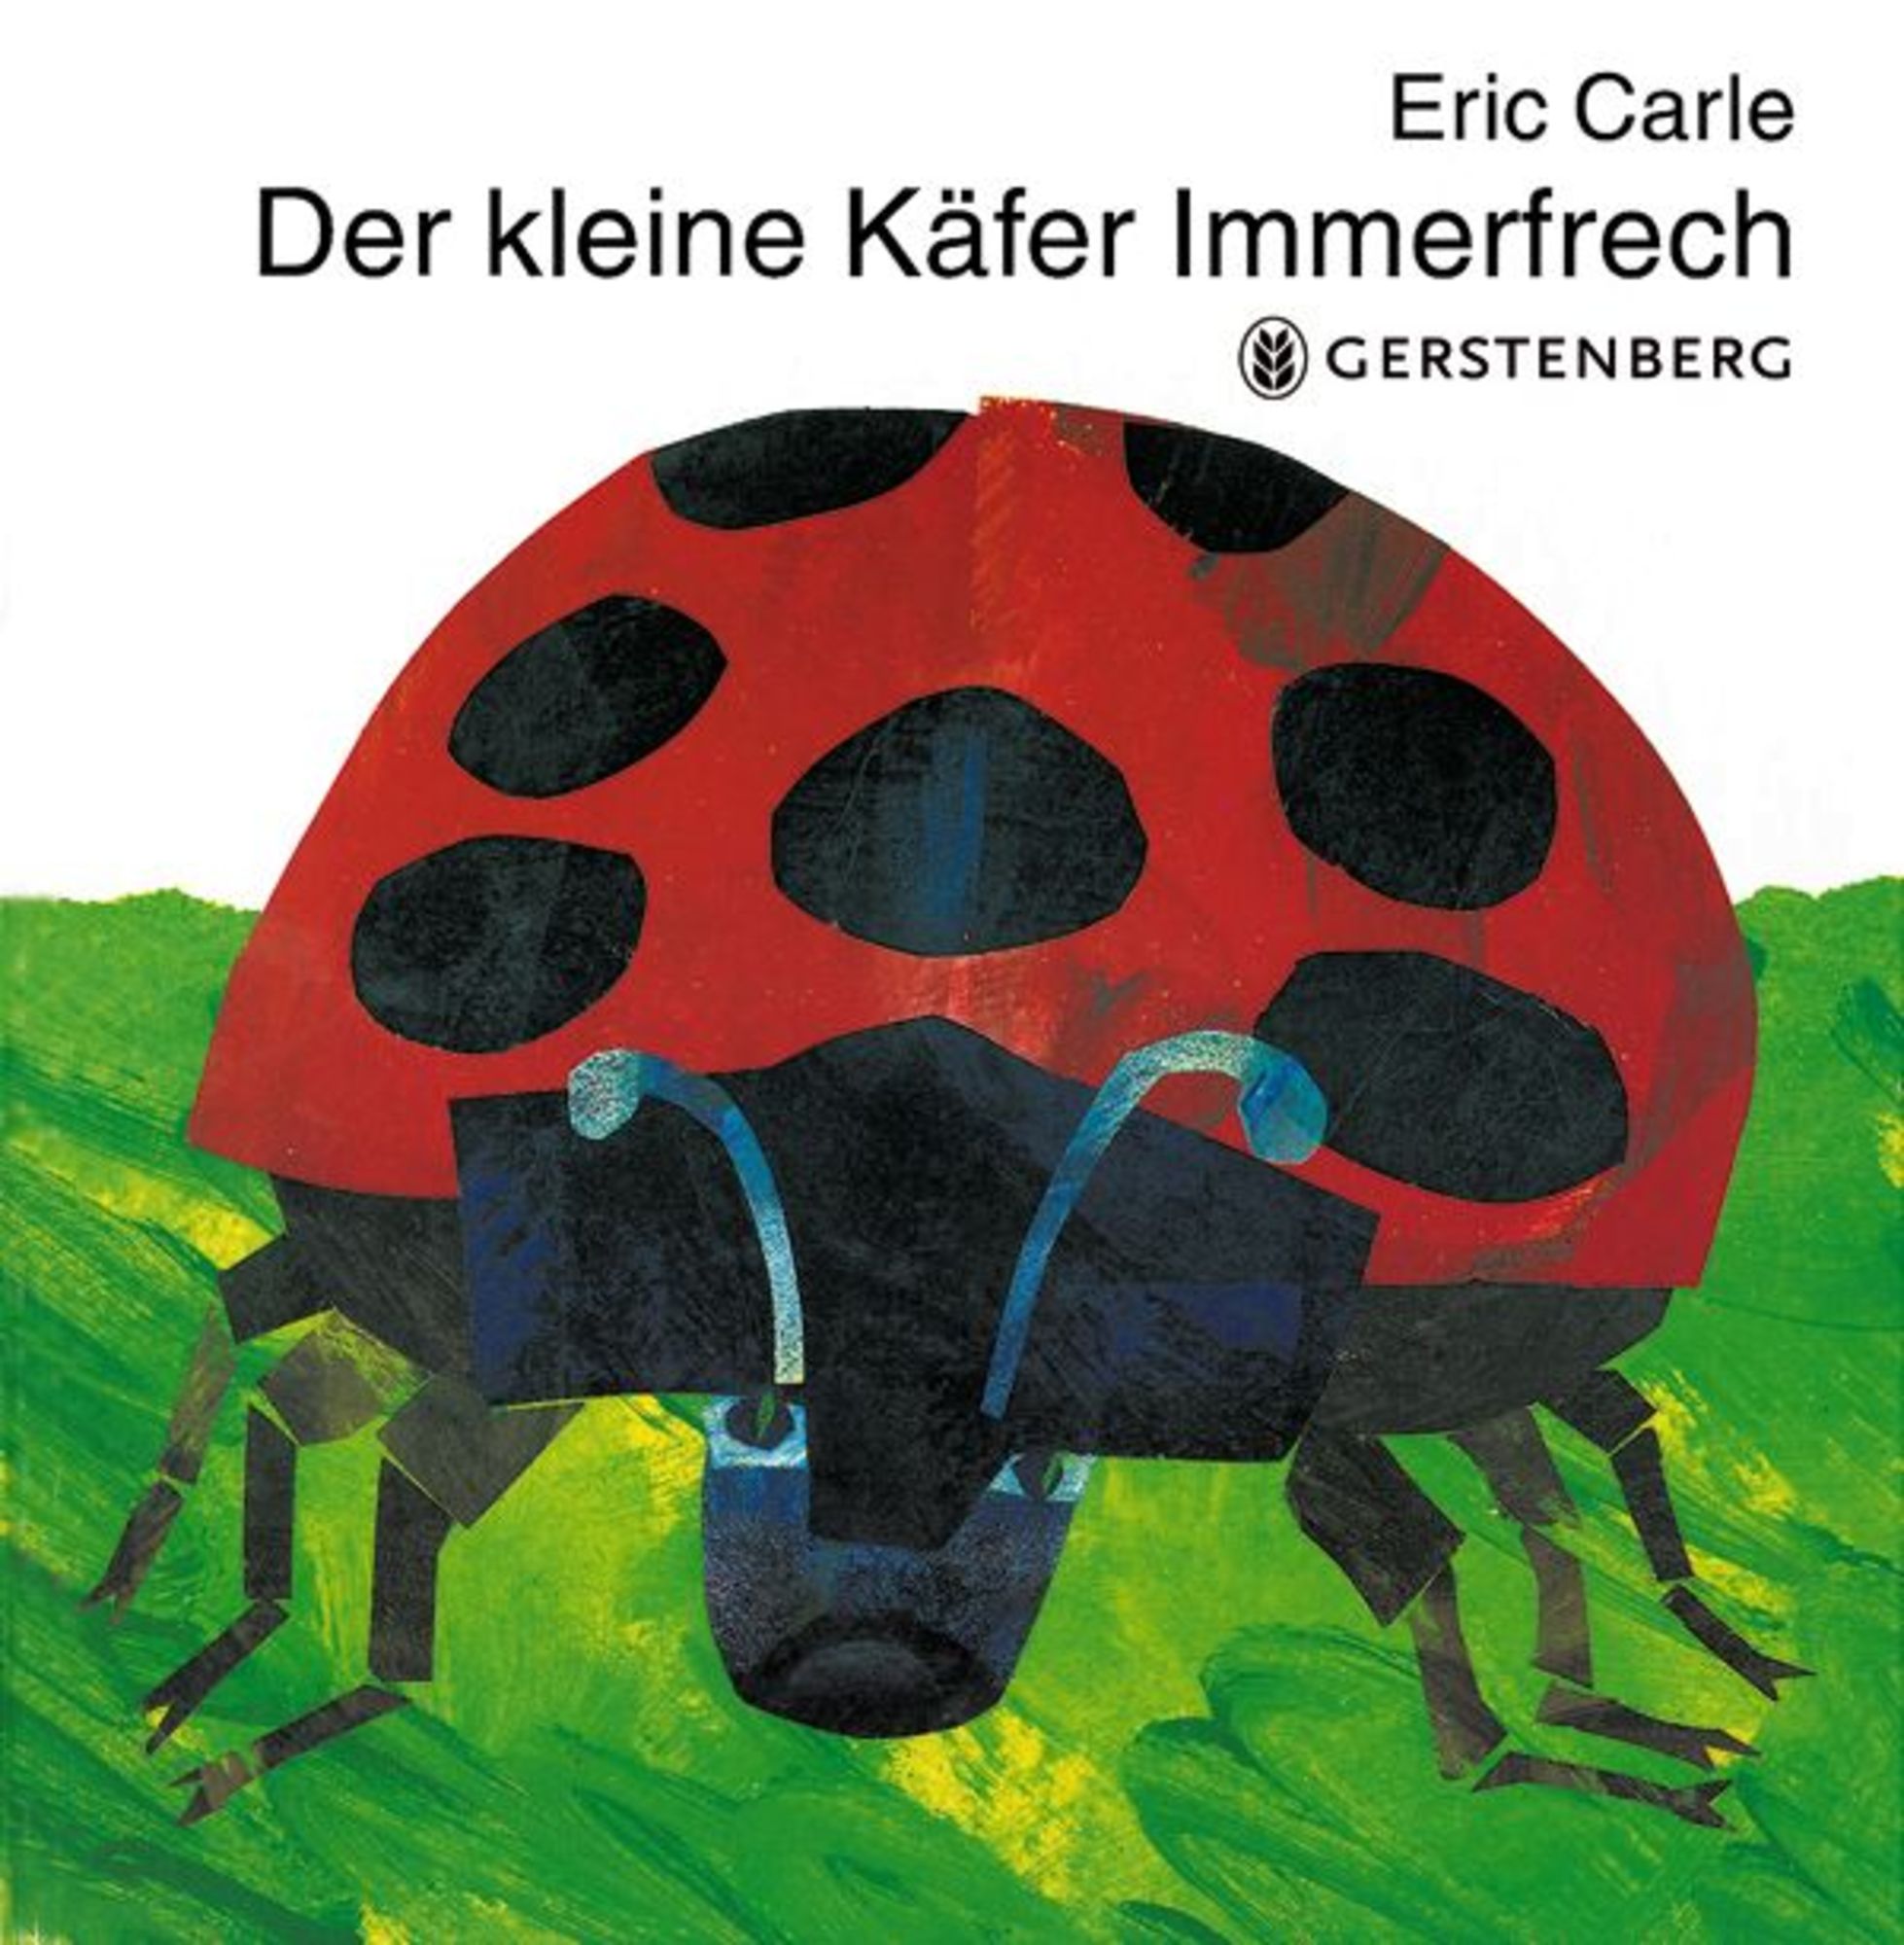 Der kleine Käfer Immerfrech' von 'Eric Carle' - Buch - '978-3-8369-4276-8